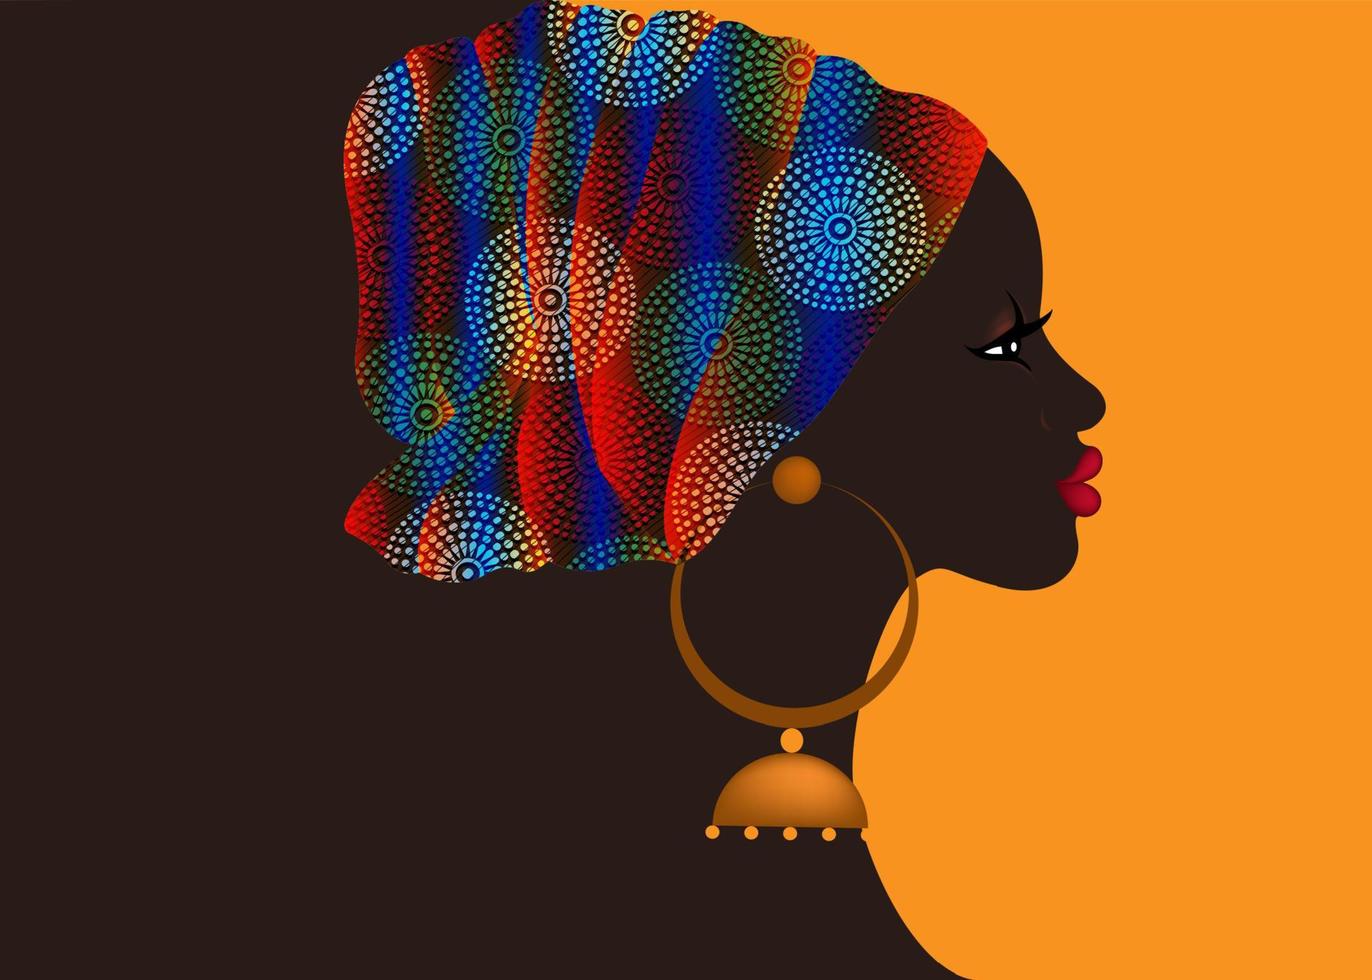 afro-frisur, schöne porträtafrikanische frau im wachsdruckstoff-turban, ethnische stammes-bunte kopfpackung für afro-lockiges haar, banner-vorlage, vektor isoliert auf orangefarbenem hintergrund